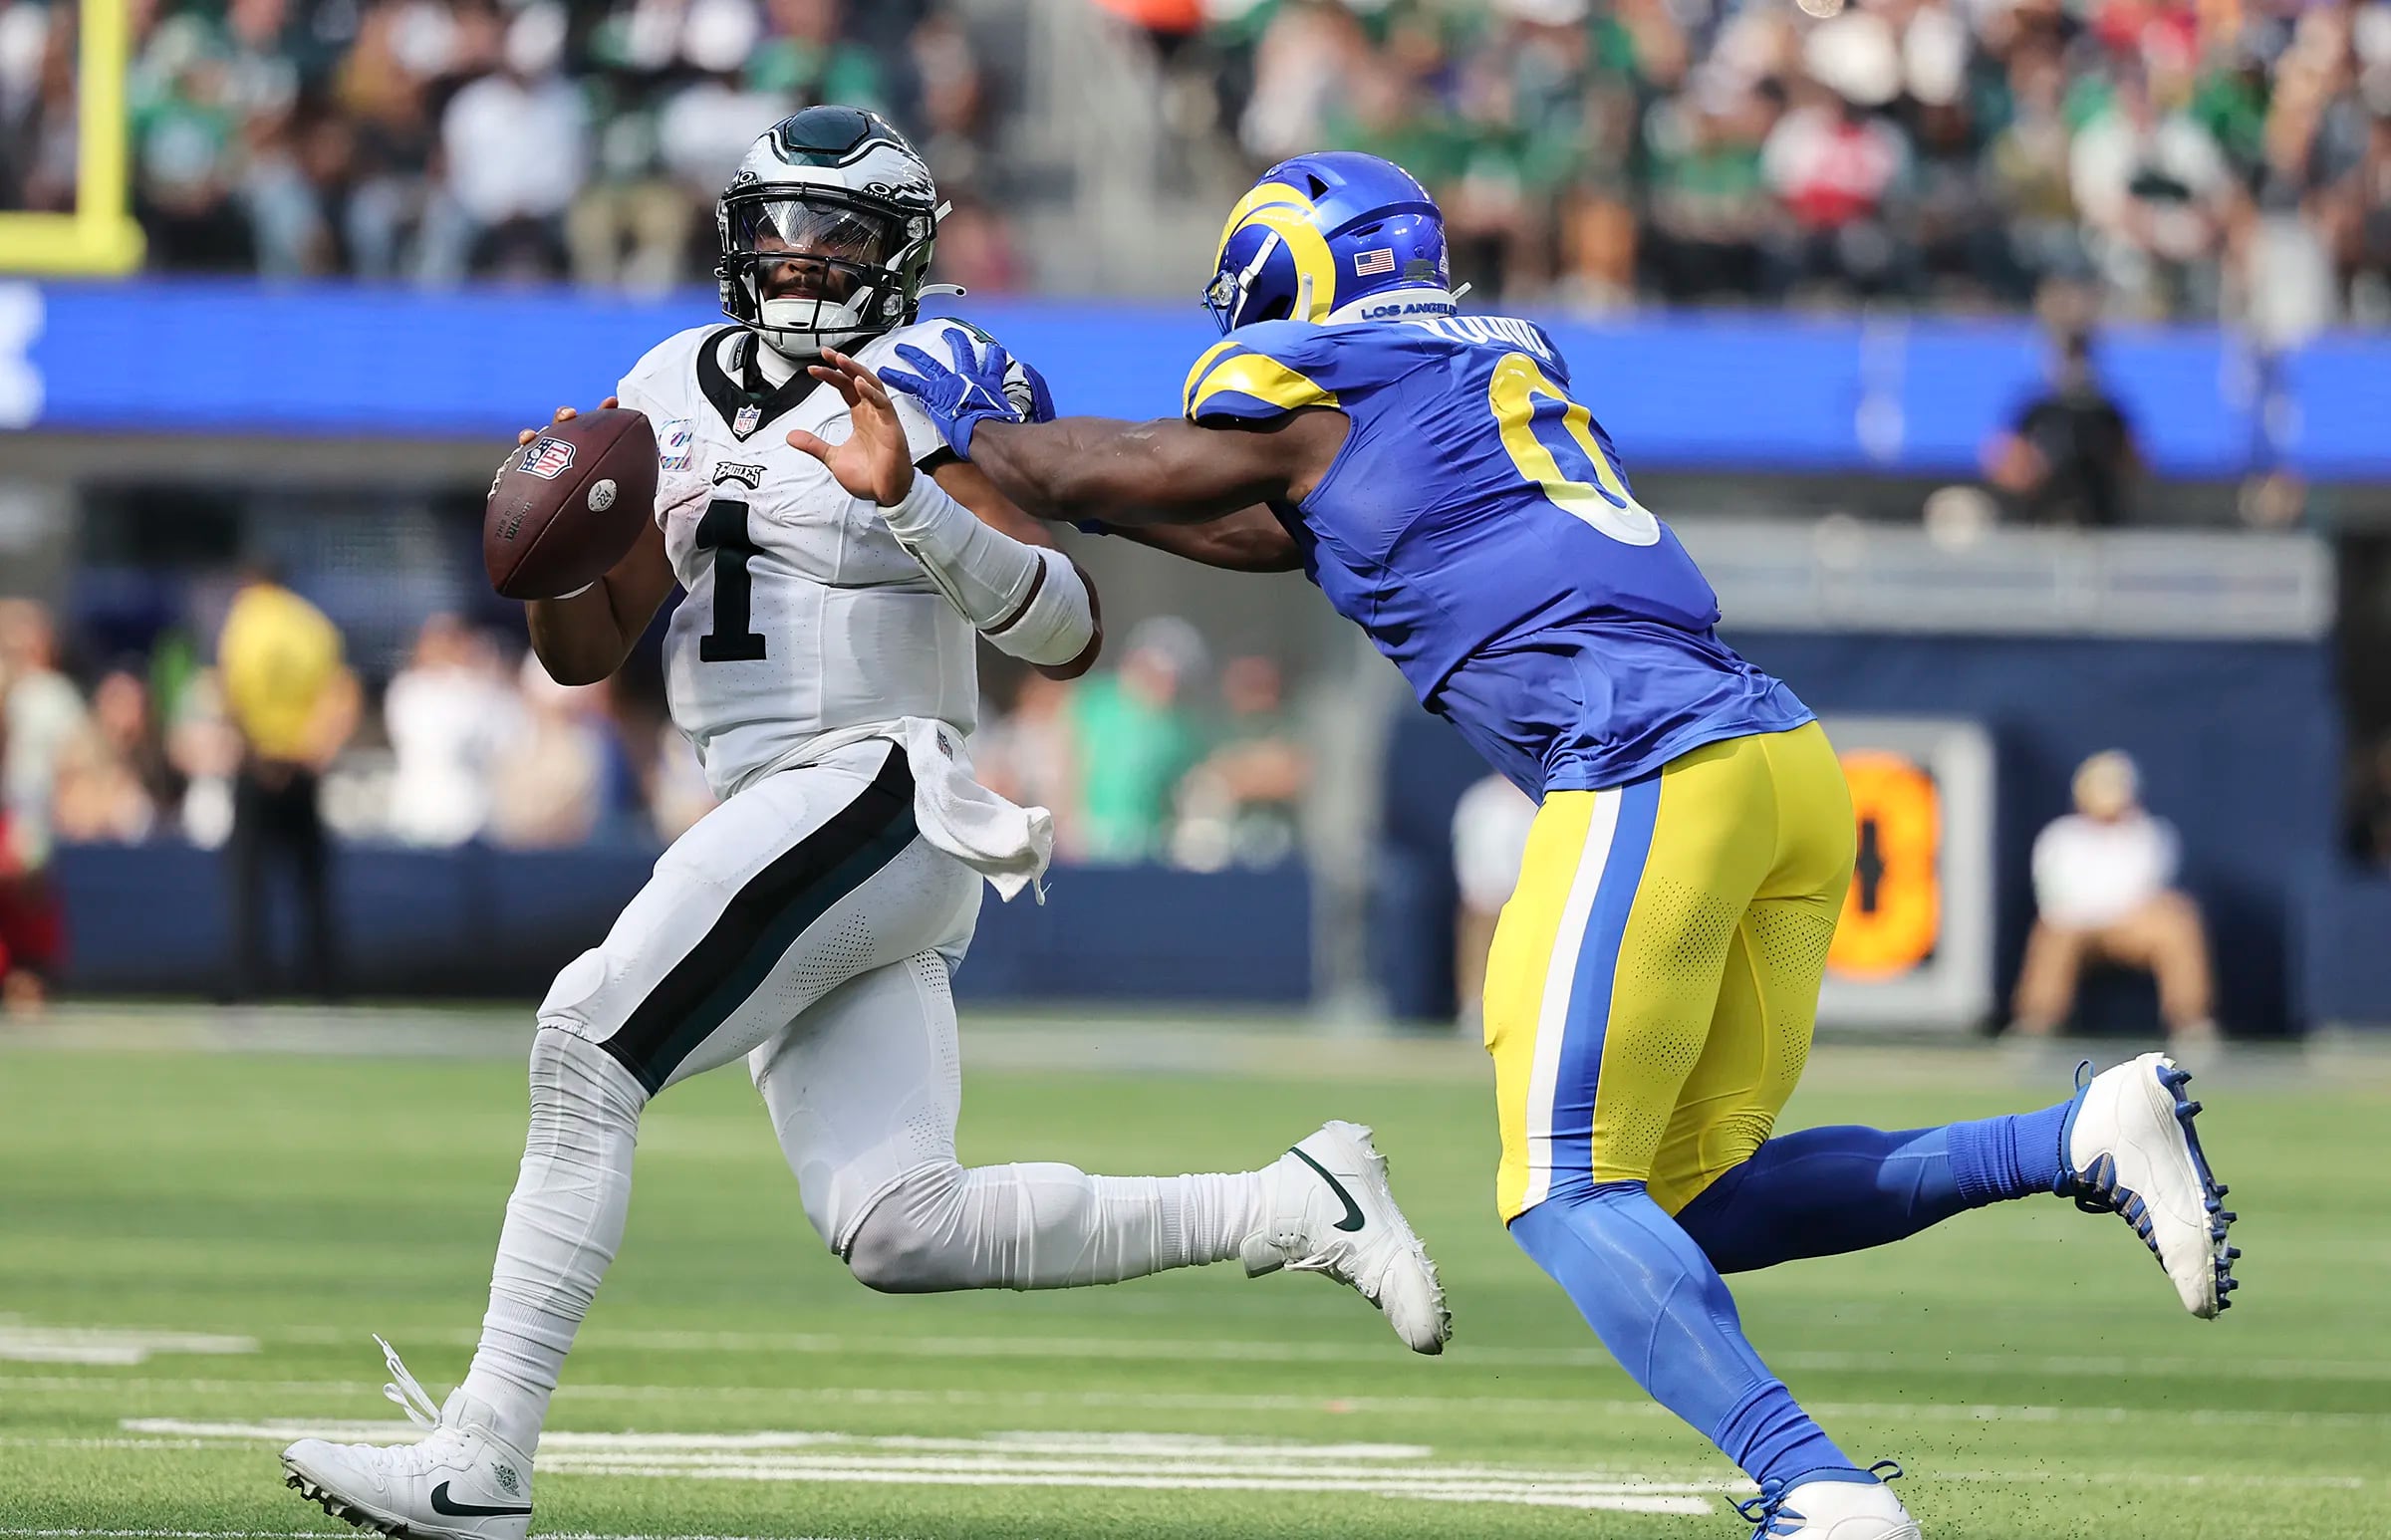 LOOK: Los Angeles Rams Reveal Week 5 Uniforms vs. Eagles - Sports